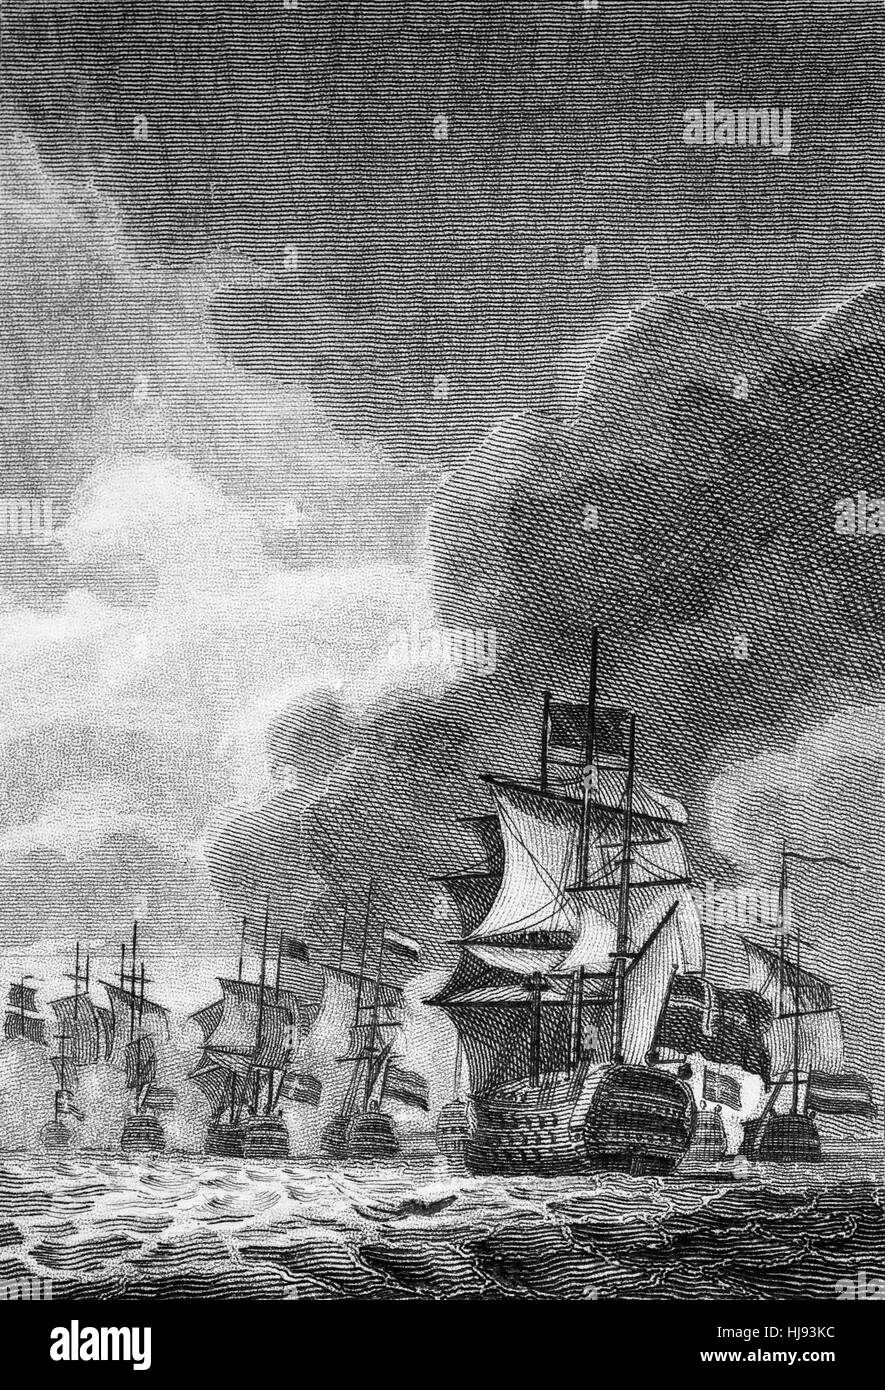 Sir Edward Spragge aka Spragg o Sprague (circa 1620 - 1673) era un ammiraglio irlandese della Royal Navy. Egli fu un ardente, brillantemente realizzato marinaio che hanno combattuto in molte grandi battaglie dopo la restaurazione del re Carlo II nel 1660 includente una sconfitta degli Olandesi nel 1672, durante la terza guerra anglo-olandese in cui Spragge era al comando del Red Squadron su 'London' nella battaglia di Solebay nel 1672. Foto Stock